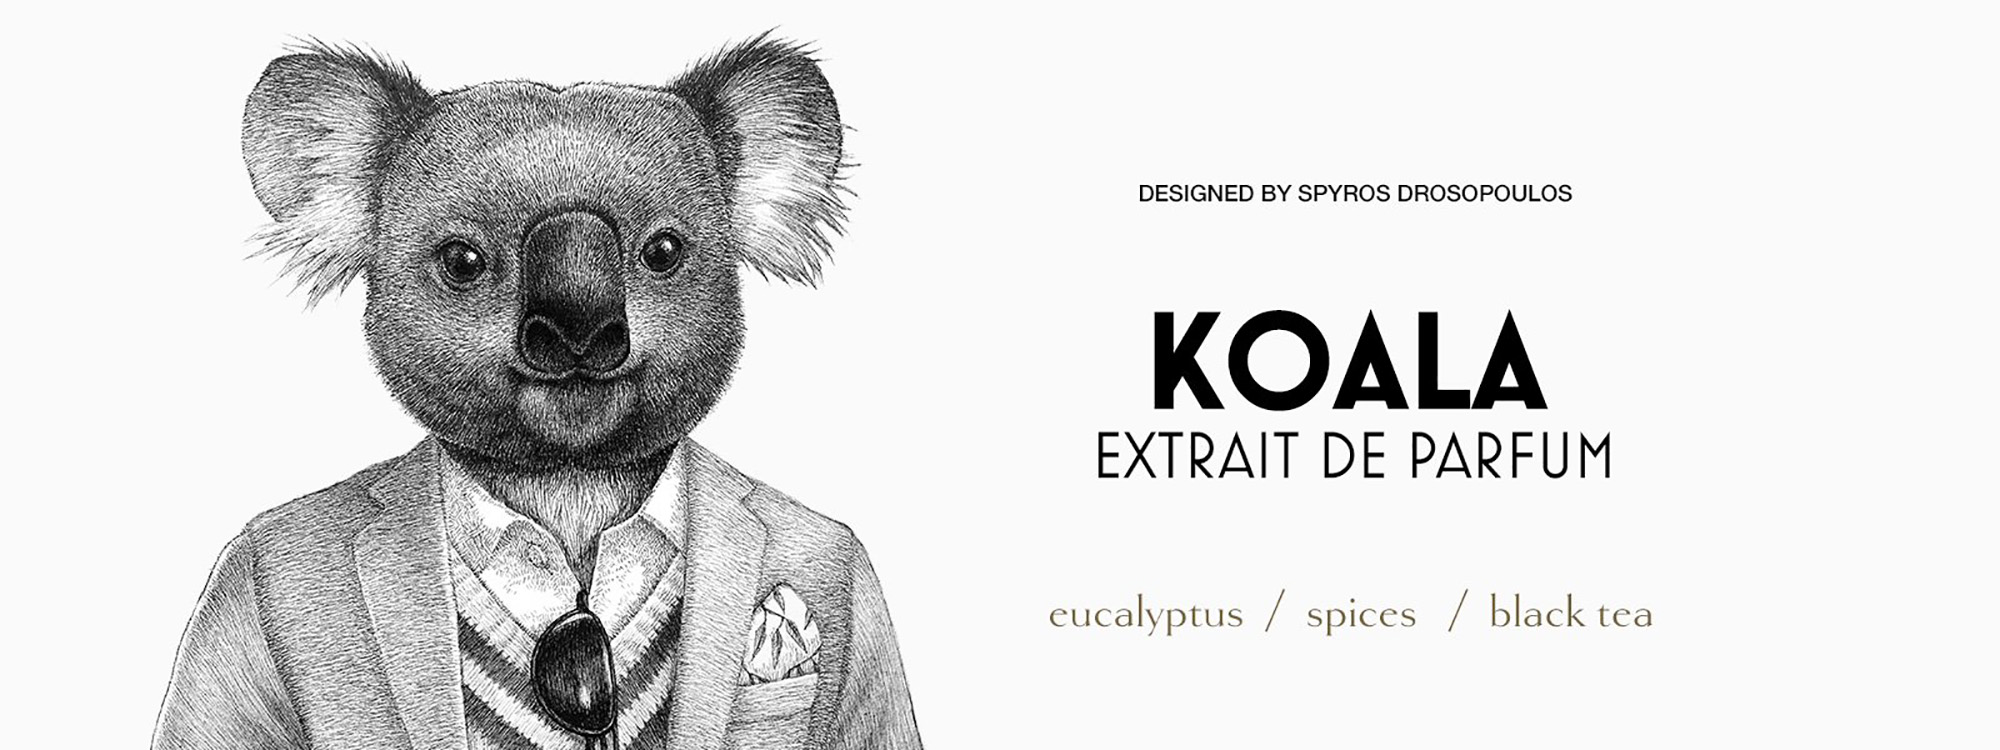 Koala masthead from Zoologist perfumes. 